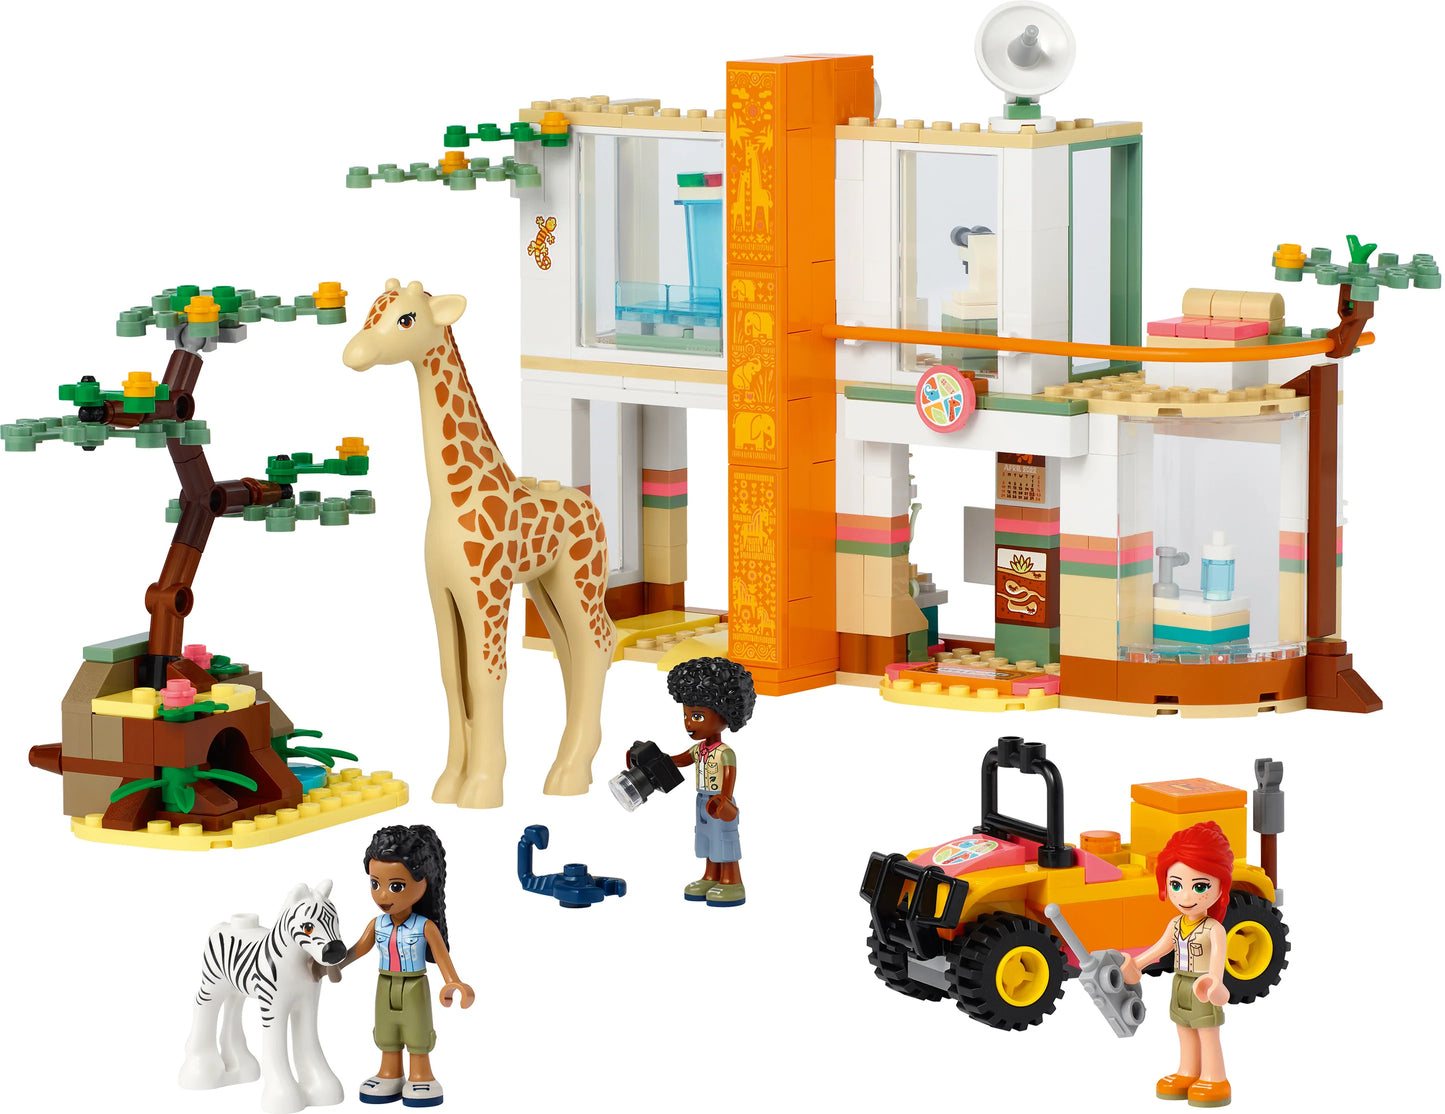 Mia's wilde dieren bescherming-LEGO Friends